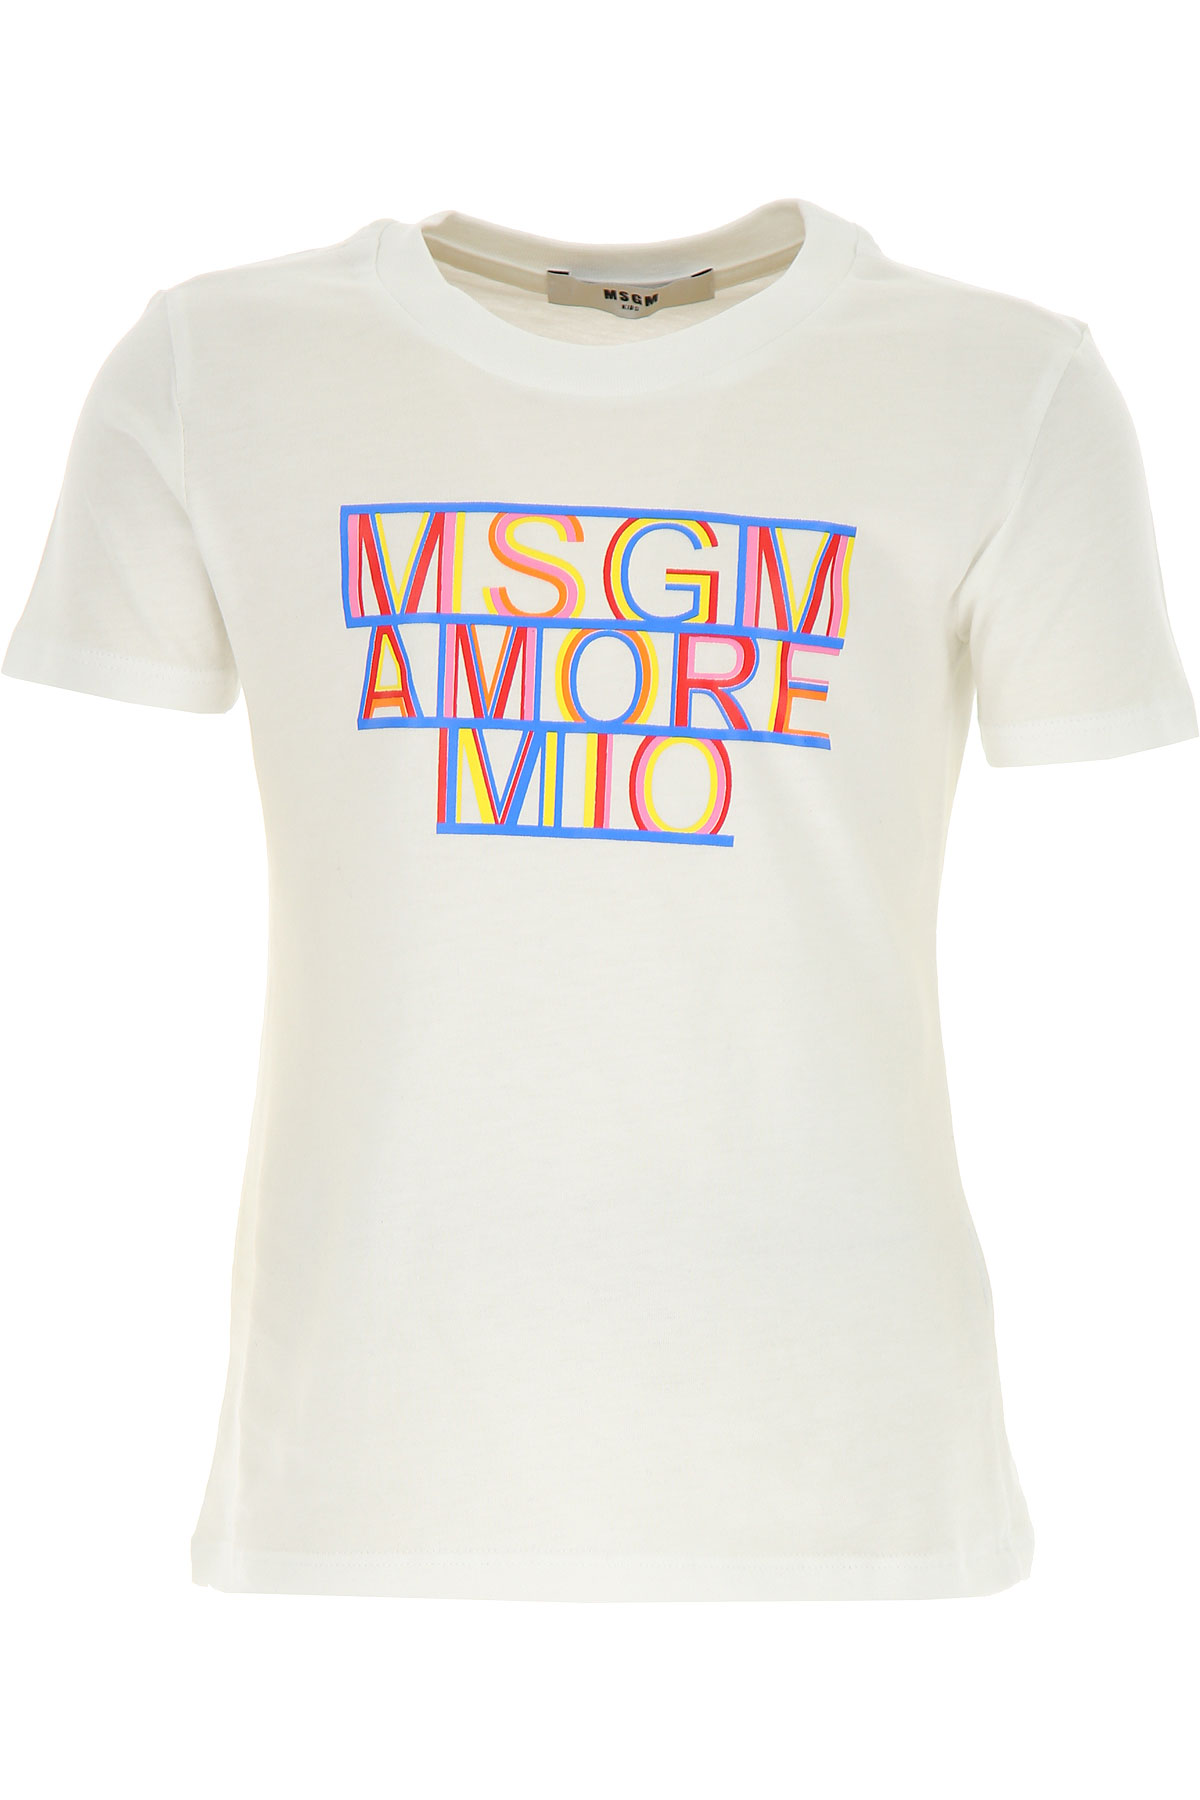 MSGM Kinder T-Shirt für Mädchen Günstig im Sale, Weiss, Baumwolle, 2017, 4Y 6Y